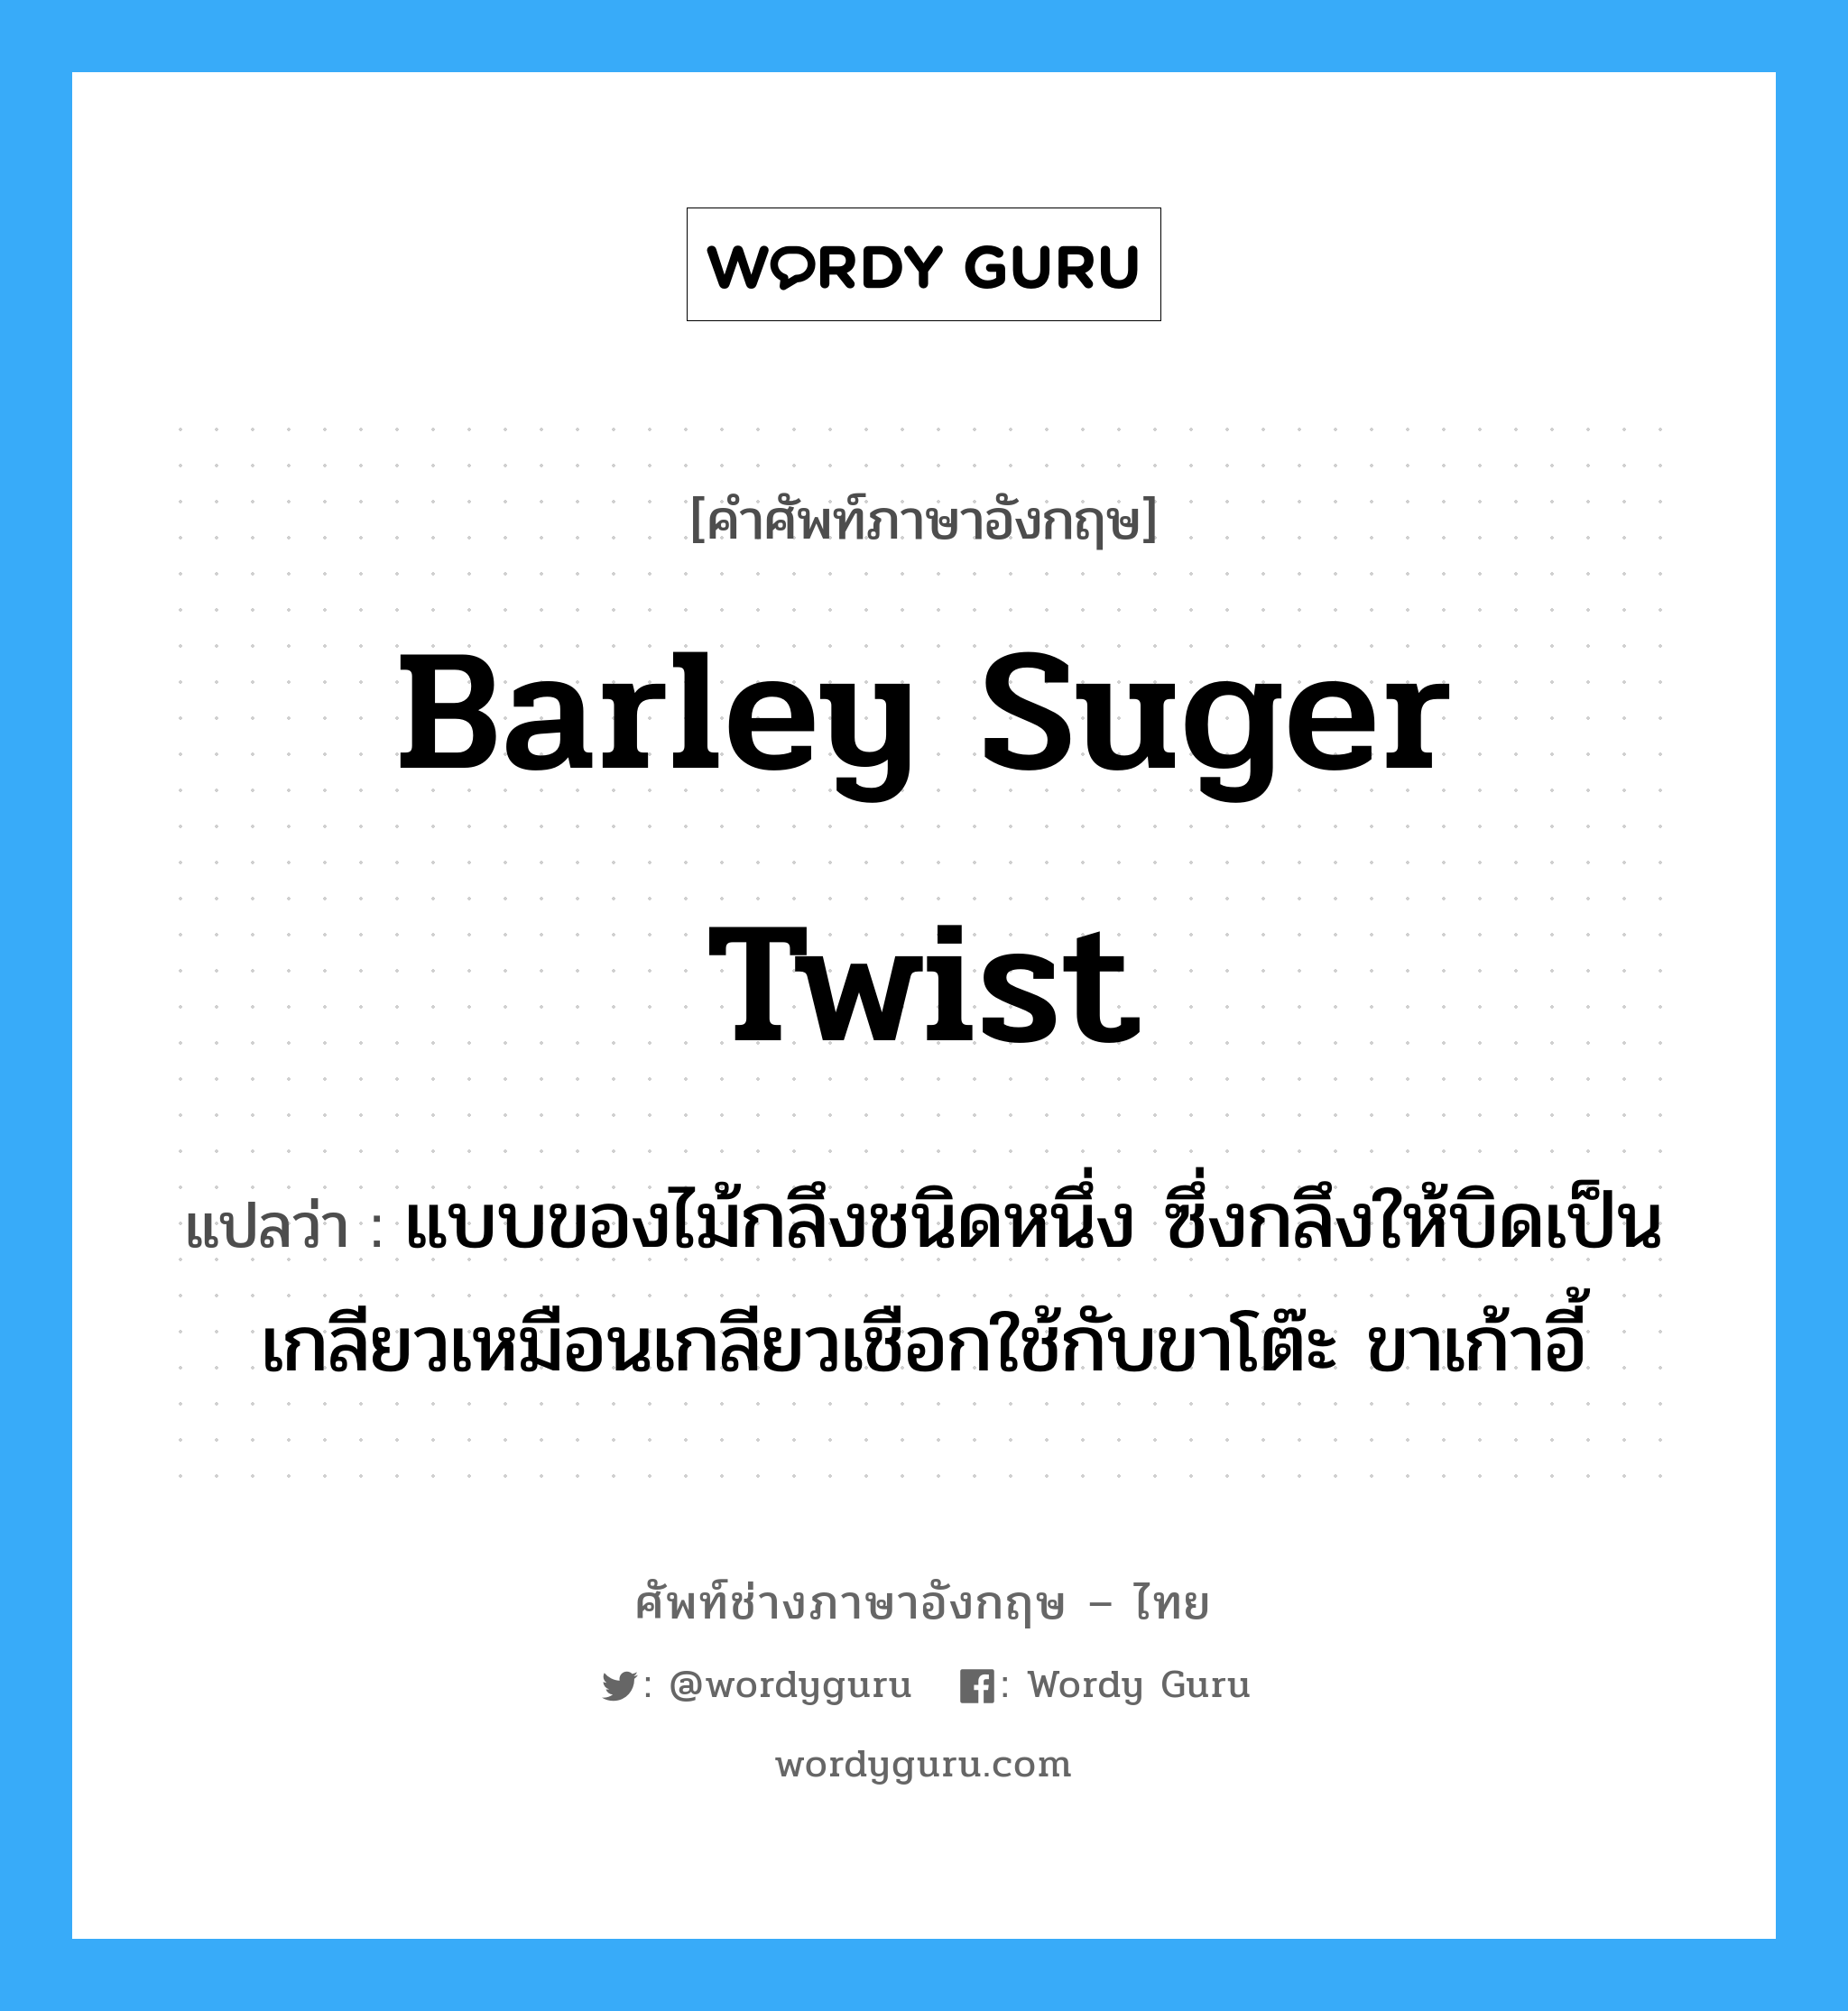 barley suger twist แปลว่า?, คำศัพท์ช่างภาษาอังกฤษ - ไทย barley suger twist คำศัพท์ภาษาอังกฤษ barley suger twist แปลว่า แบบของไม้กลึงชนิดหนึ่ง ซึ่งกลึงให้บิดเป็นเกลียวเหมือนเกลียวเชือกใช้กับขาโต๊ะ ขาเก้าอี้